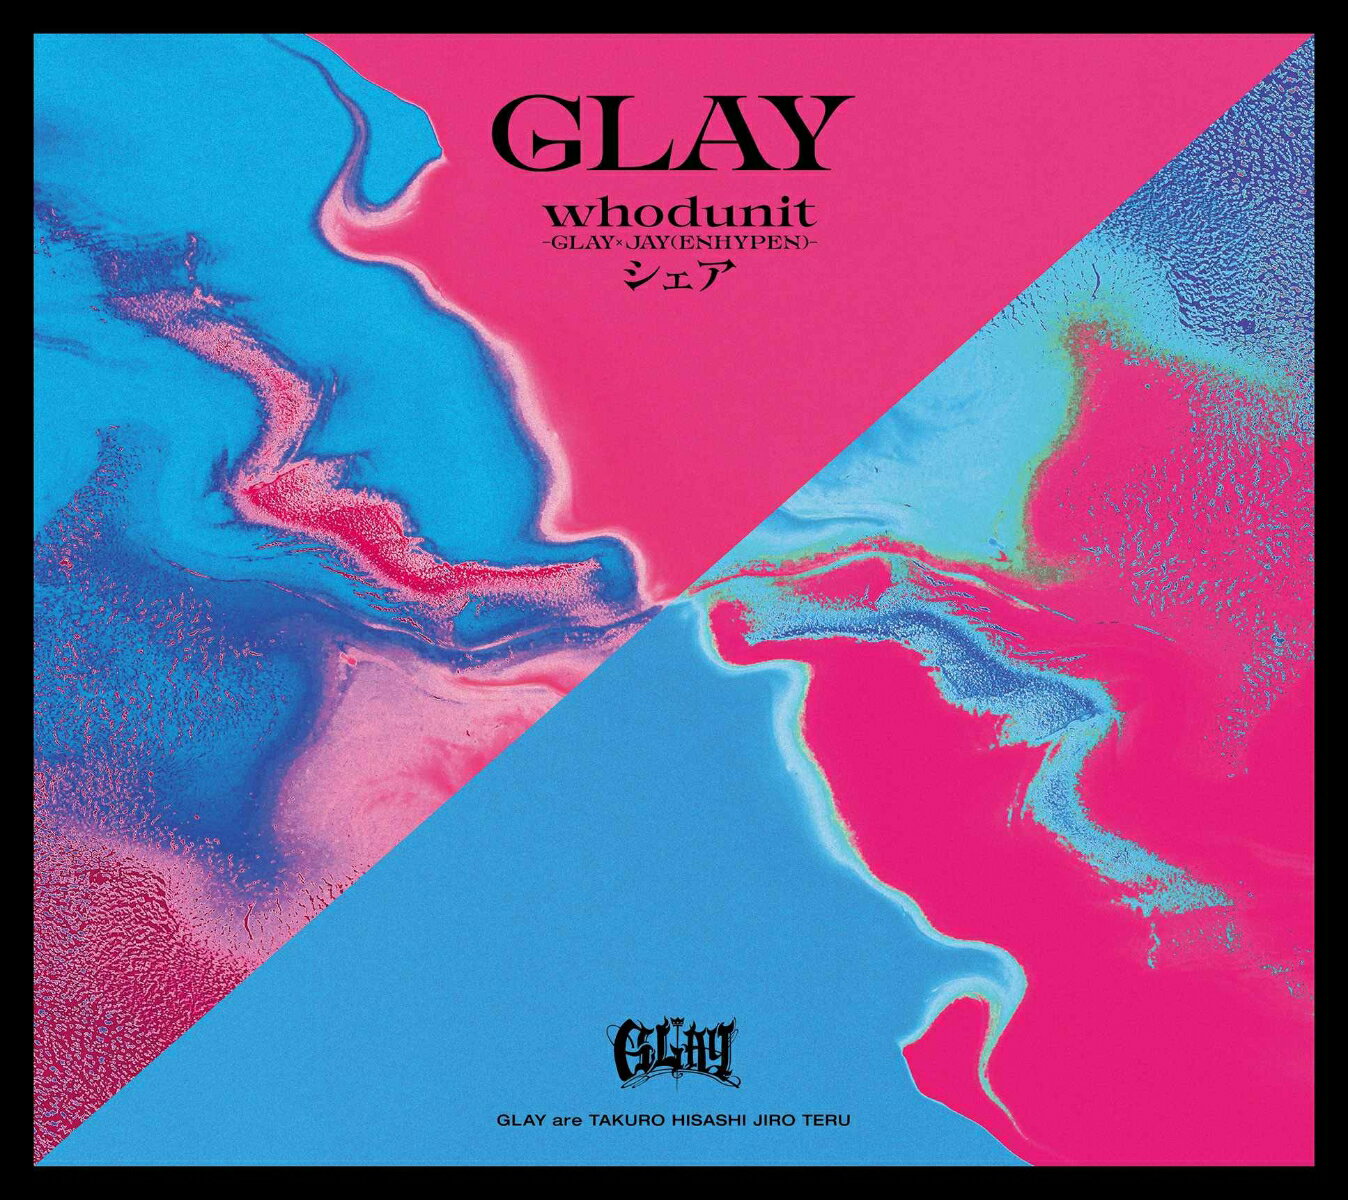 【楽天ブックス限定先着特典】whodunit-GLAY × JAY(ENHYPEN)- /シェア【CD Only】(缶バッジスクエア型(57mm)) [ GLAY ]